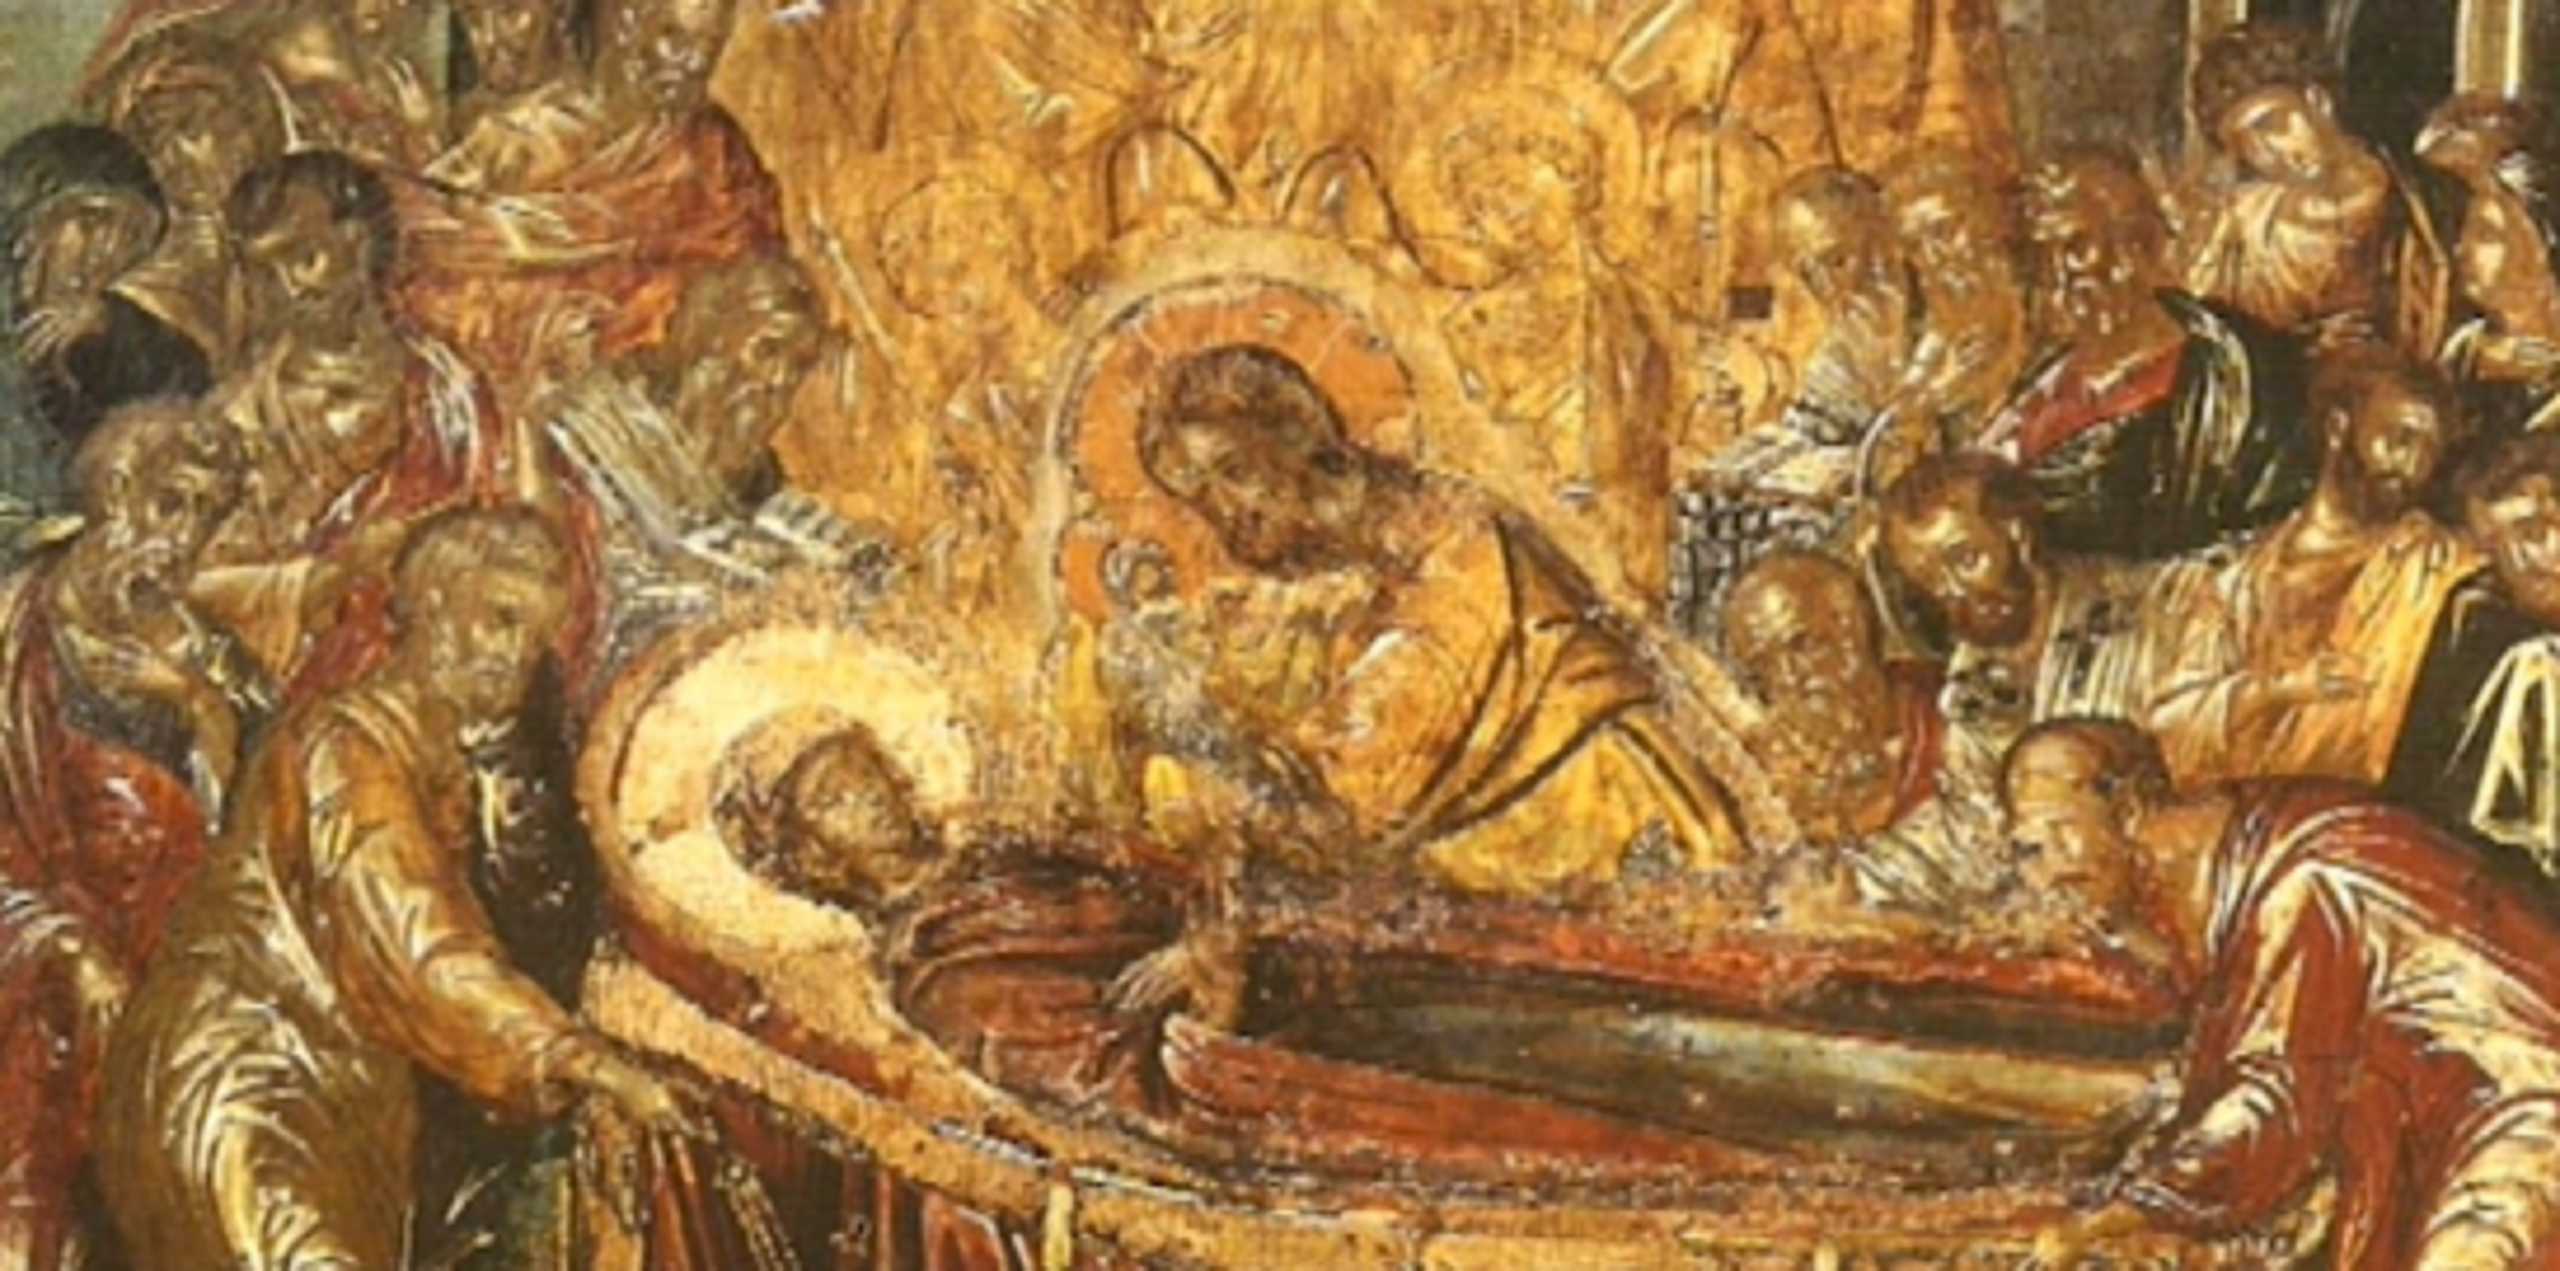 Σύρος: Η εκπληκτική ιστορία της εικόνας του Ελ Γκρέκο που βρίσκεται σε εκκλησία της Ερμούπολης (video)